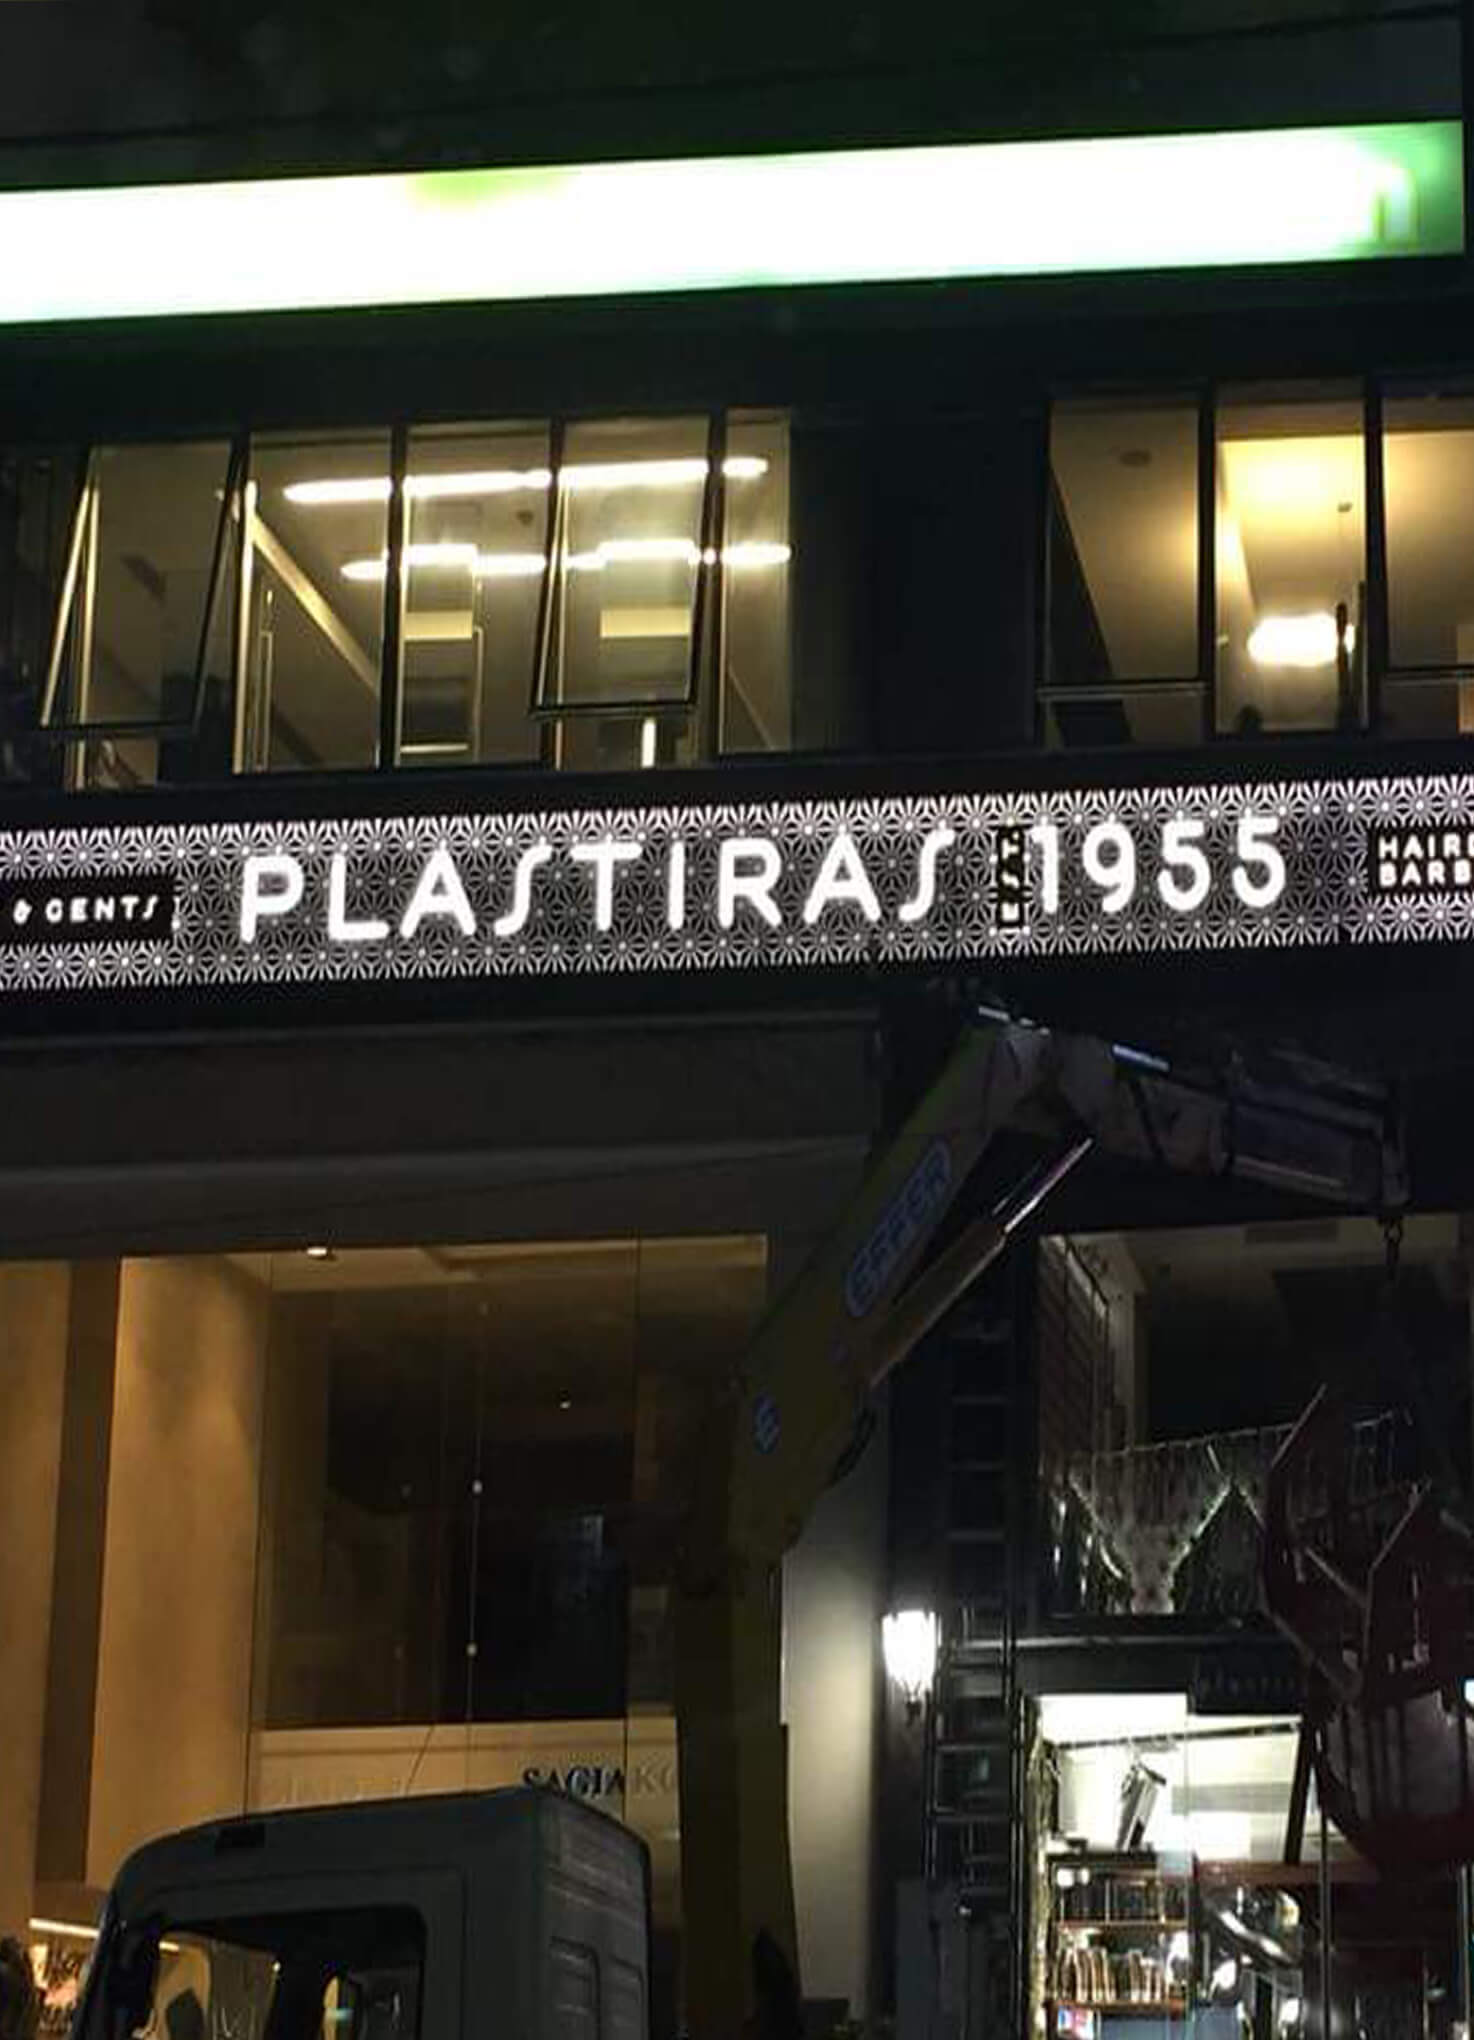 Αλλαγή εποχής και ονόματος σε Plastiras 1955 - Τοποθέτηση νέας επιγραφής